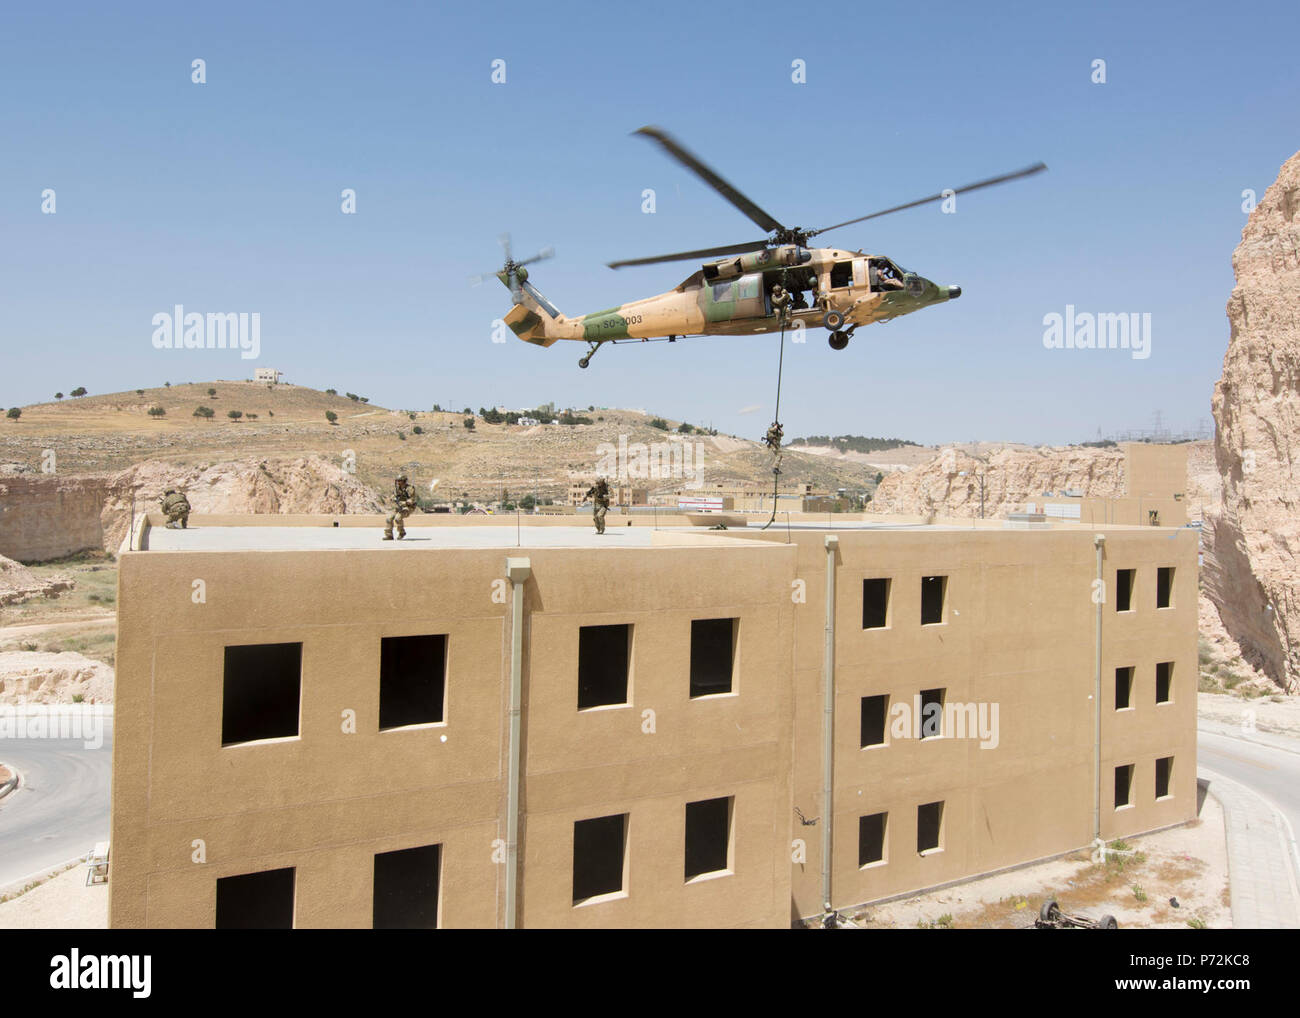 AMMAN, JORDANIE (11 mai 2017) Les membres de l'Air Force Special Operations à partir de la 23e Special Tactics Squadron de corde rapide à partir d'un hélicoptère UH-60 jordanienne au cours d'un exercice à l'appui de lion avide de 2017. Lion avide est un exercice annuel le Commandement central américain en Jordanie visant à renforcer les relations militaires entre les Etats-Unis, la Jordanie et d'autres partenaires internationaux. La nouvelle édition se compose d'environ 7 200 militaires provenant de plus de 20 nations qui permettra de répondre aux scénarios impliquant la sécurité aux frontières, de commandement et de contrôle, de gestion de l'espace de combat et de cyberdéfense Banque D'Images